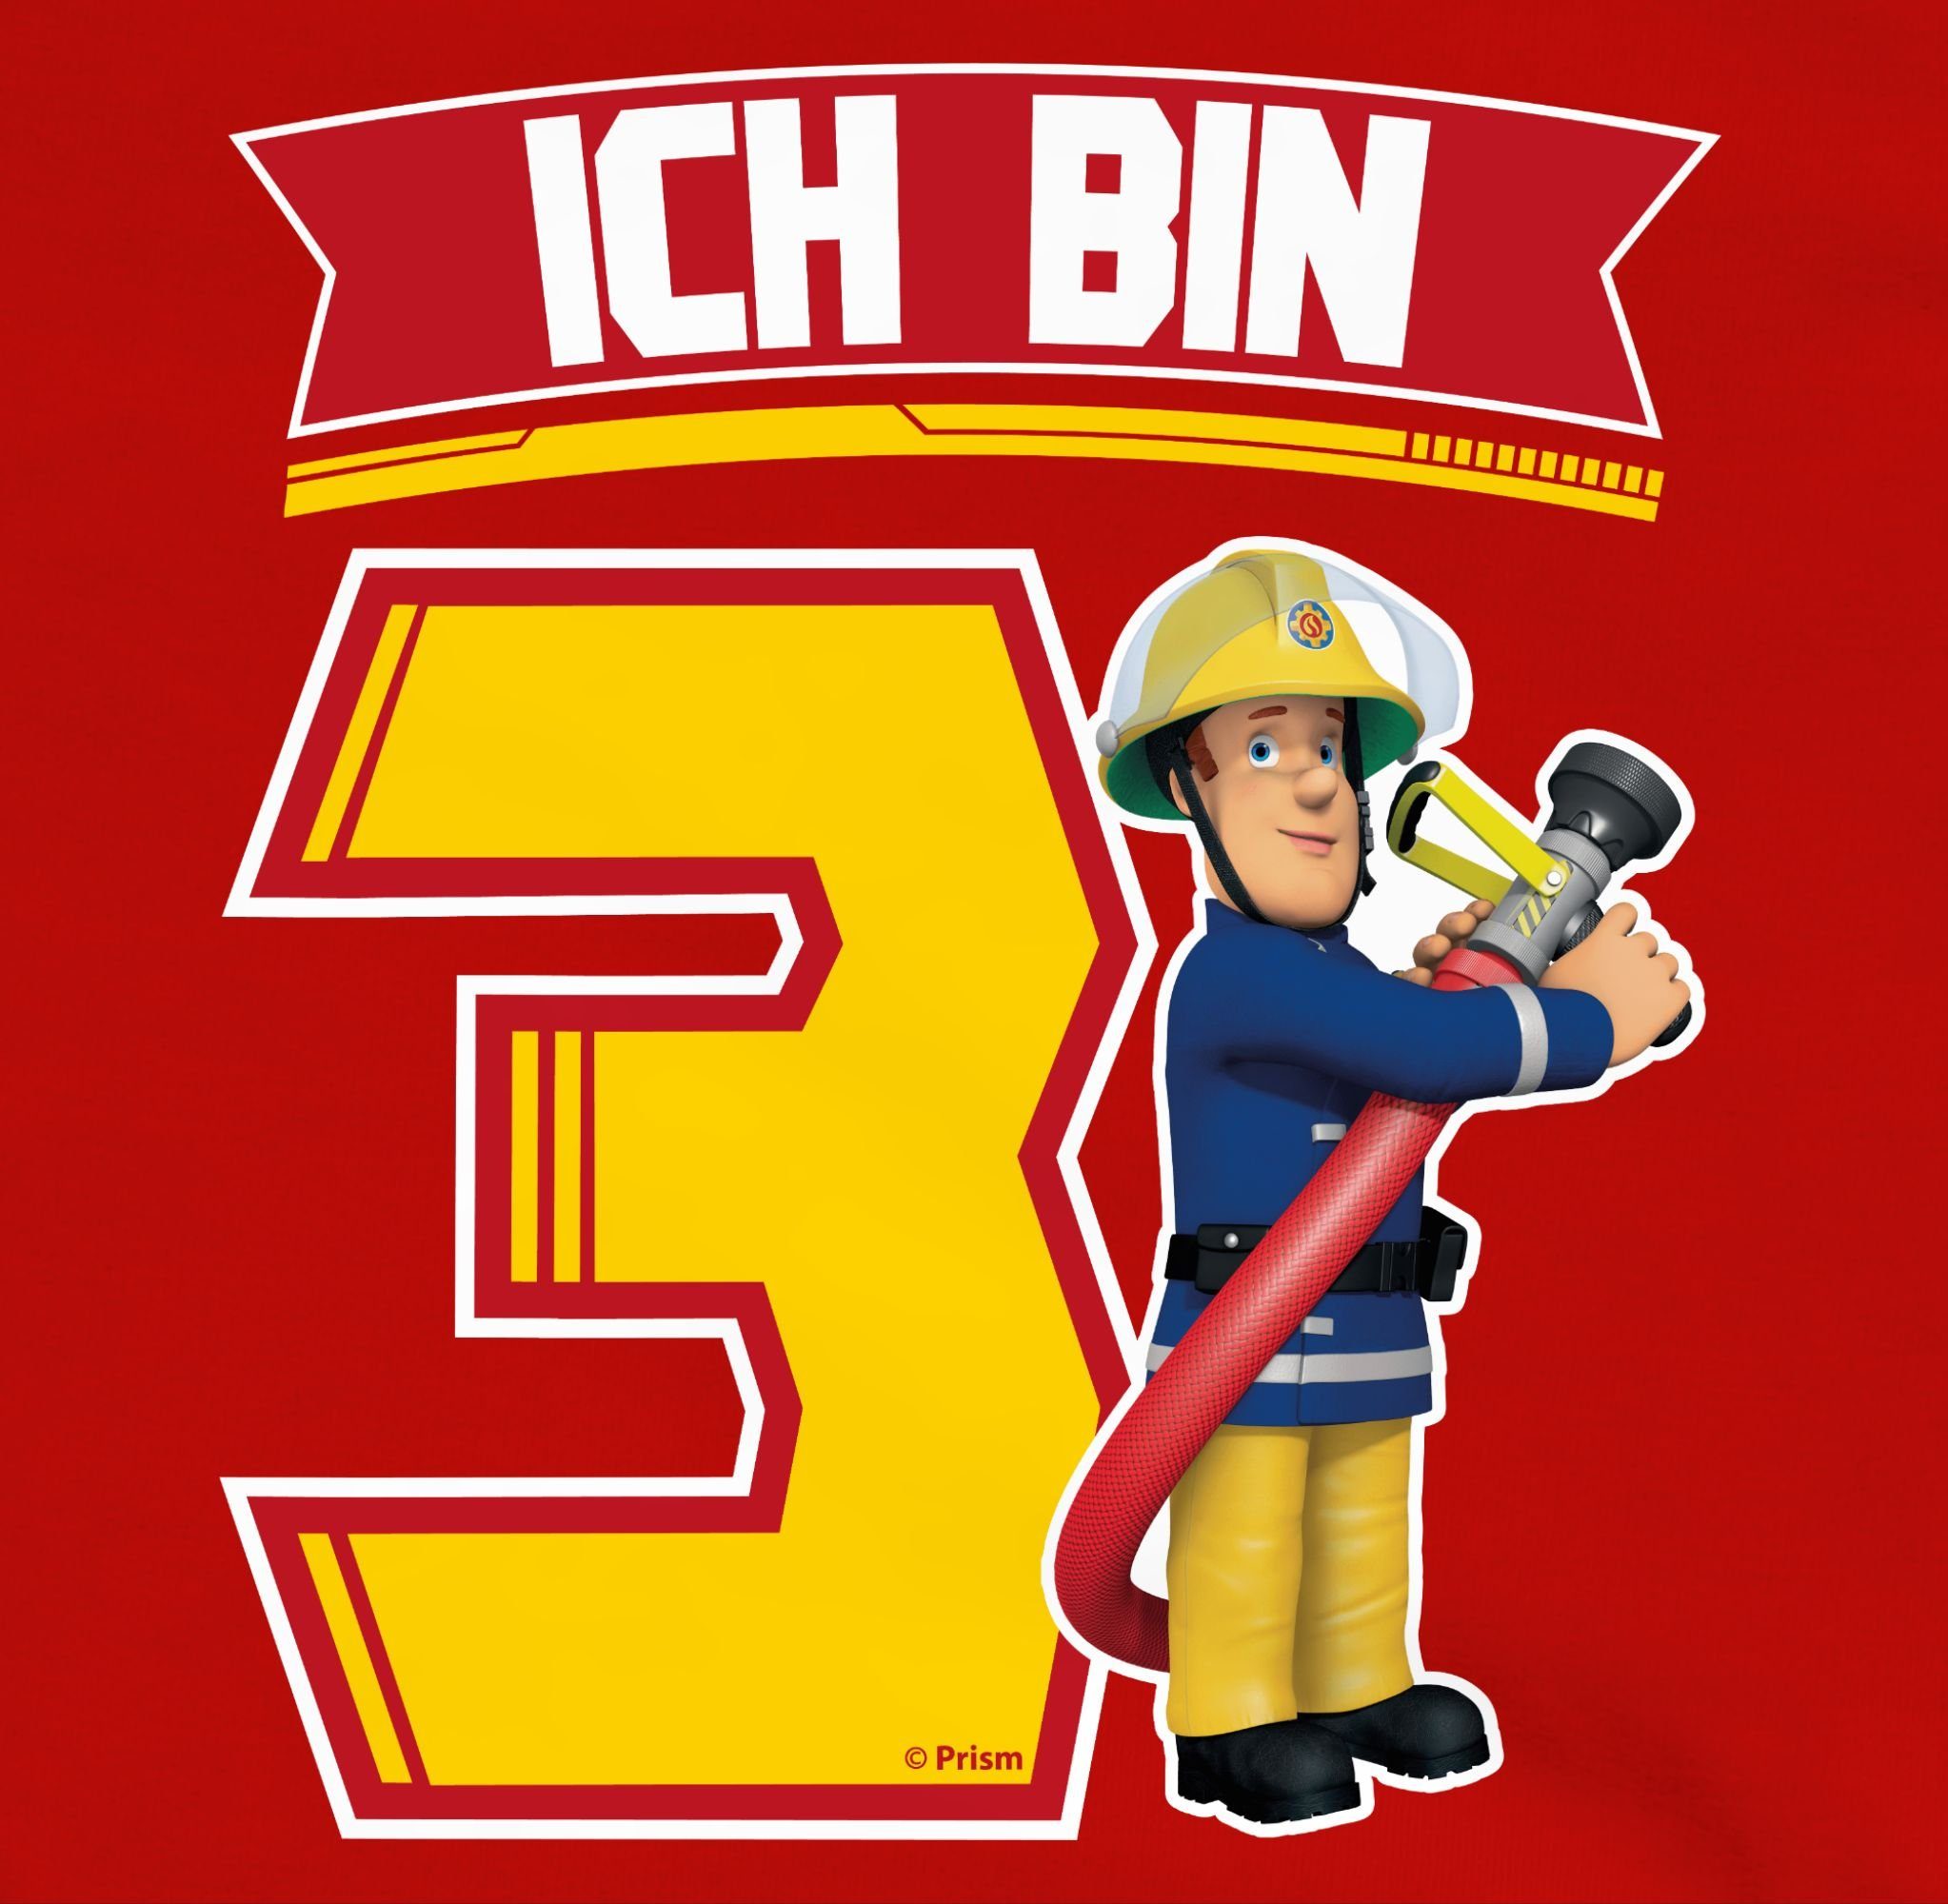 Feuerwehrmann Jungen 3 bin Sam - Ich Shirtracer Sam Rot 3 Sweatshirt